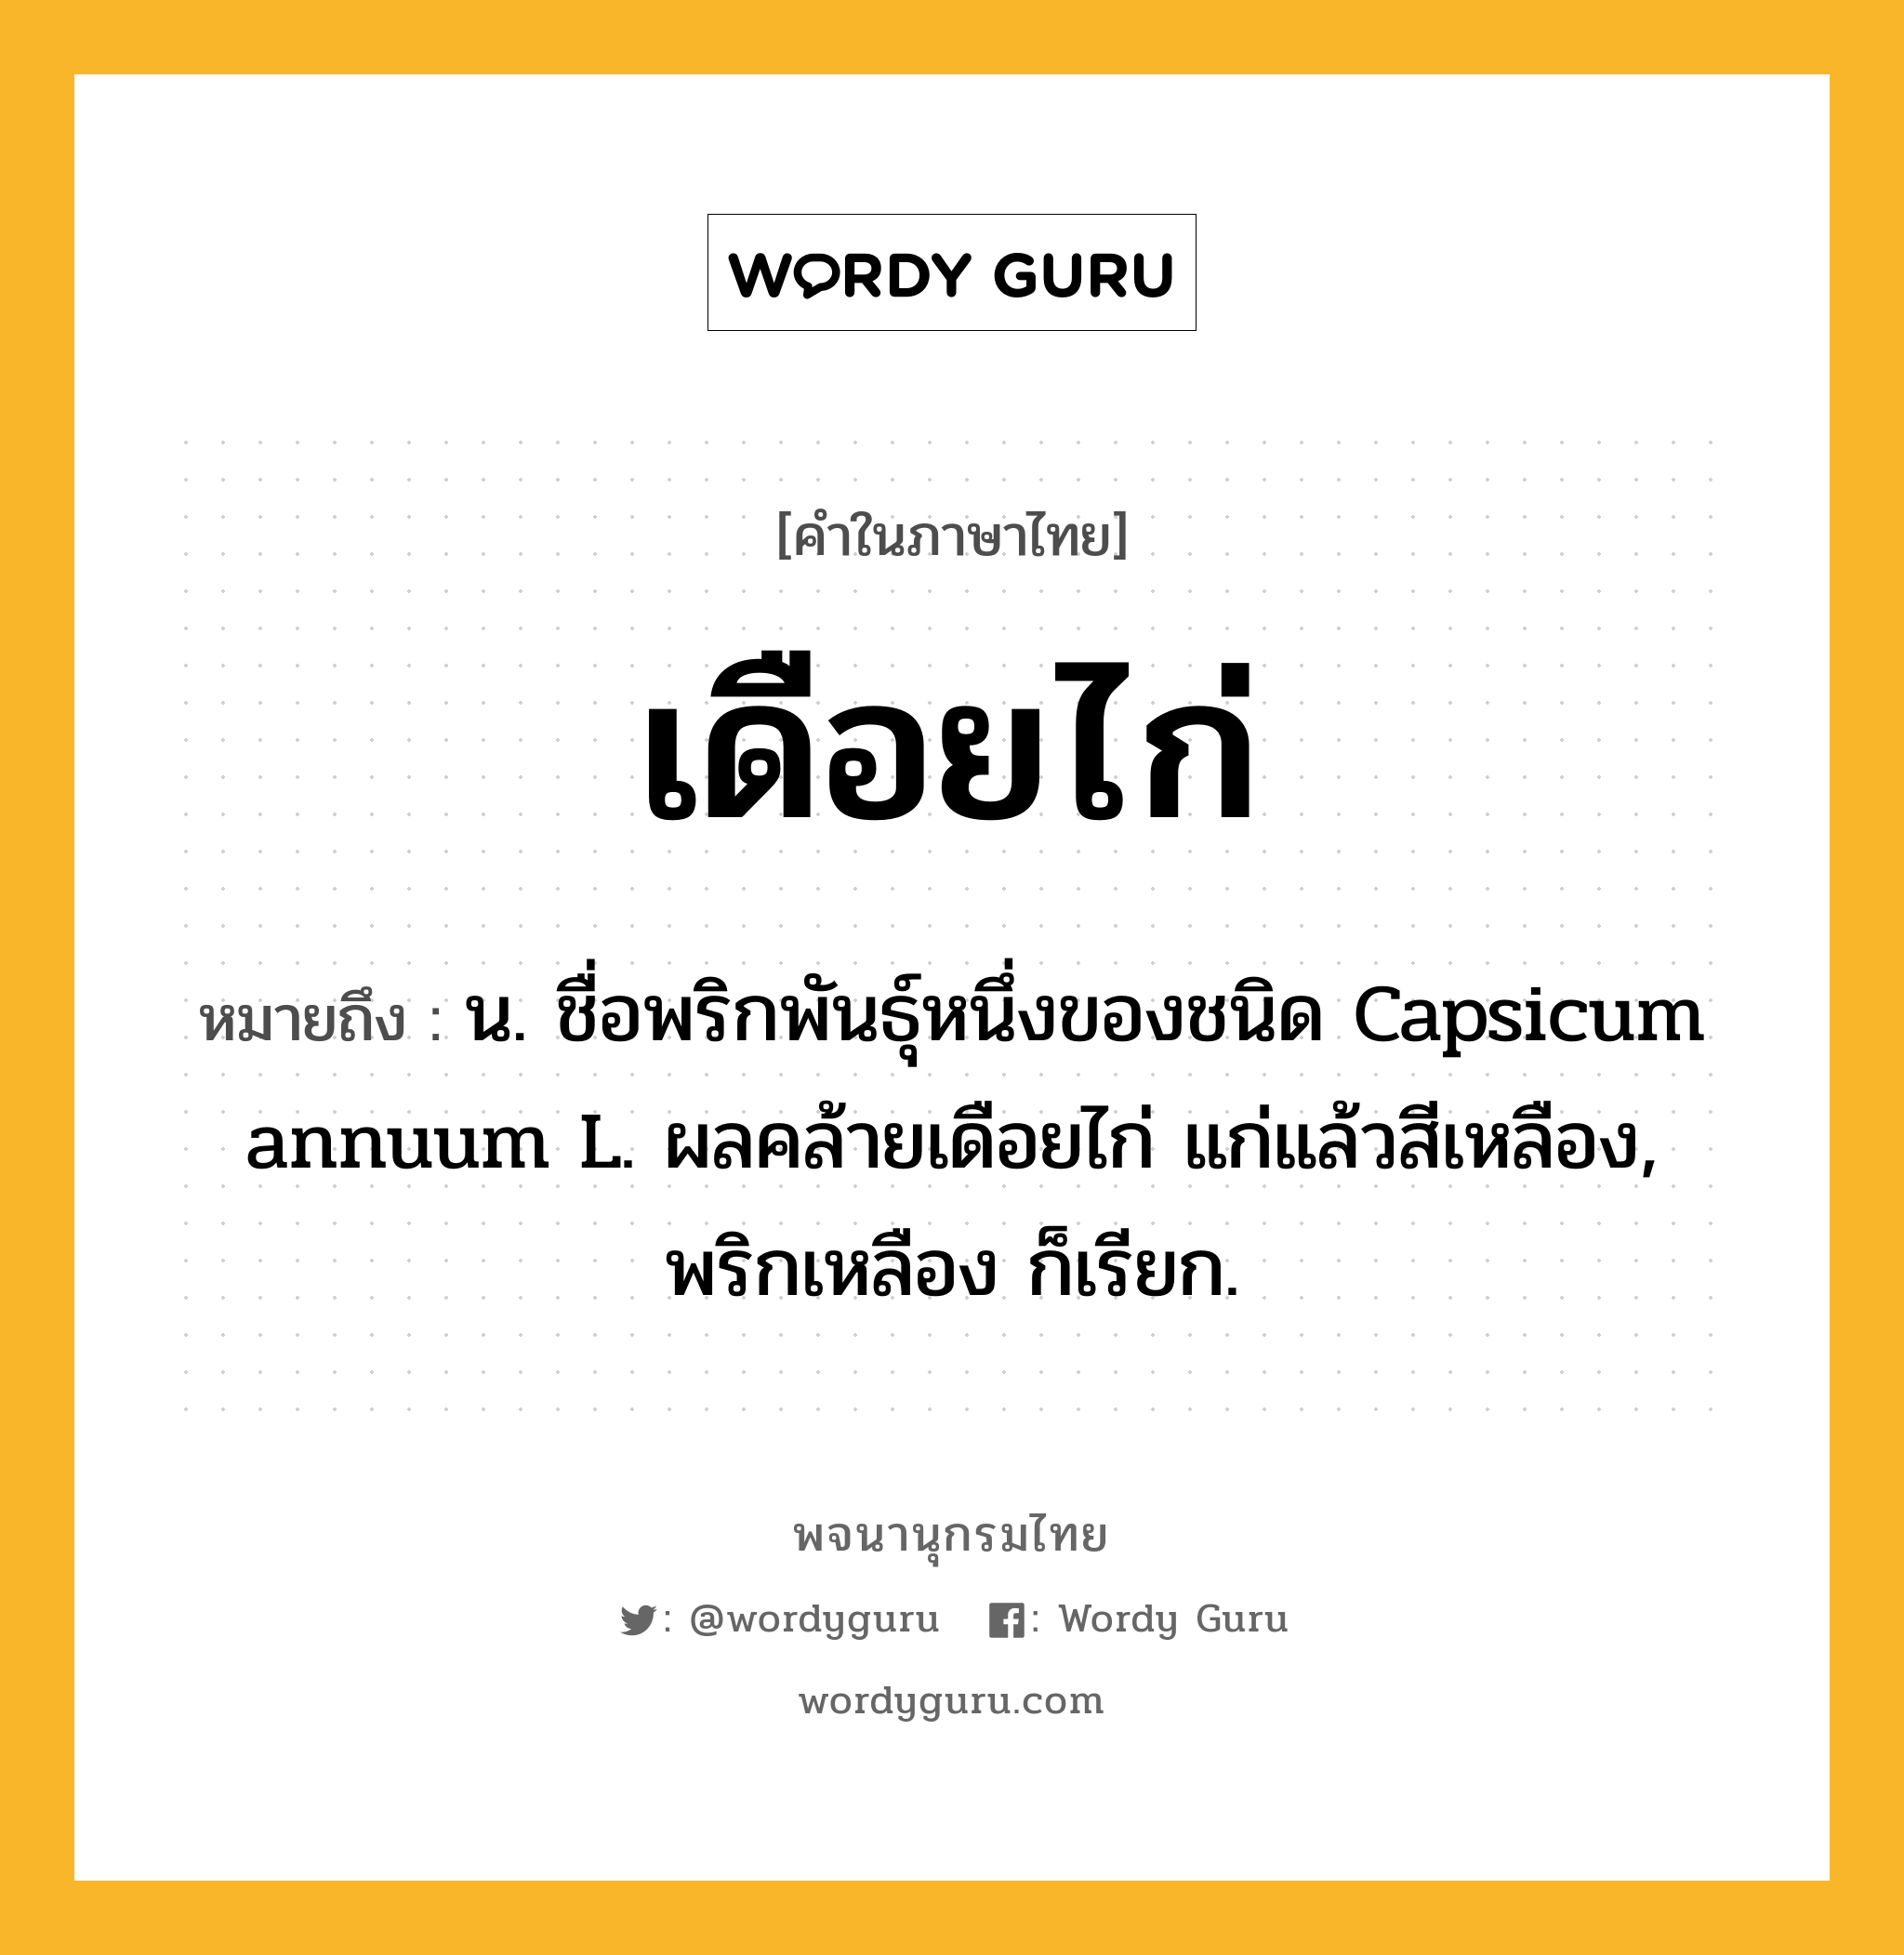 เดือยไก่ ความหมาย หมายถึงอะไร?, คำในภาษาไทย เดือยไก่ หมายถึง น. ชื่อพริกพันธุ์หนึ่งของชนิด Capsicum annuum L. ผลคล้ายเดือยไก่ แก่แล้วสีเหลือง, พริกเหลือง ก็เรียก.